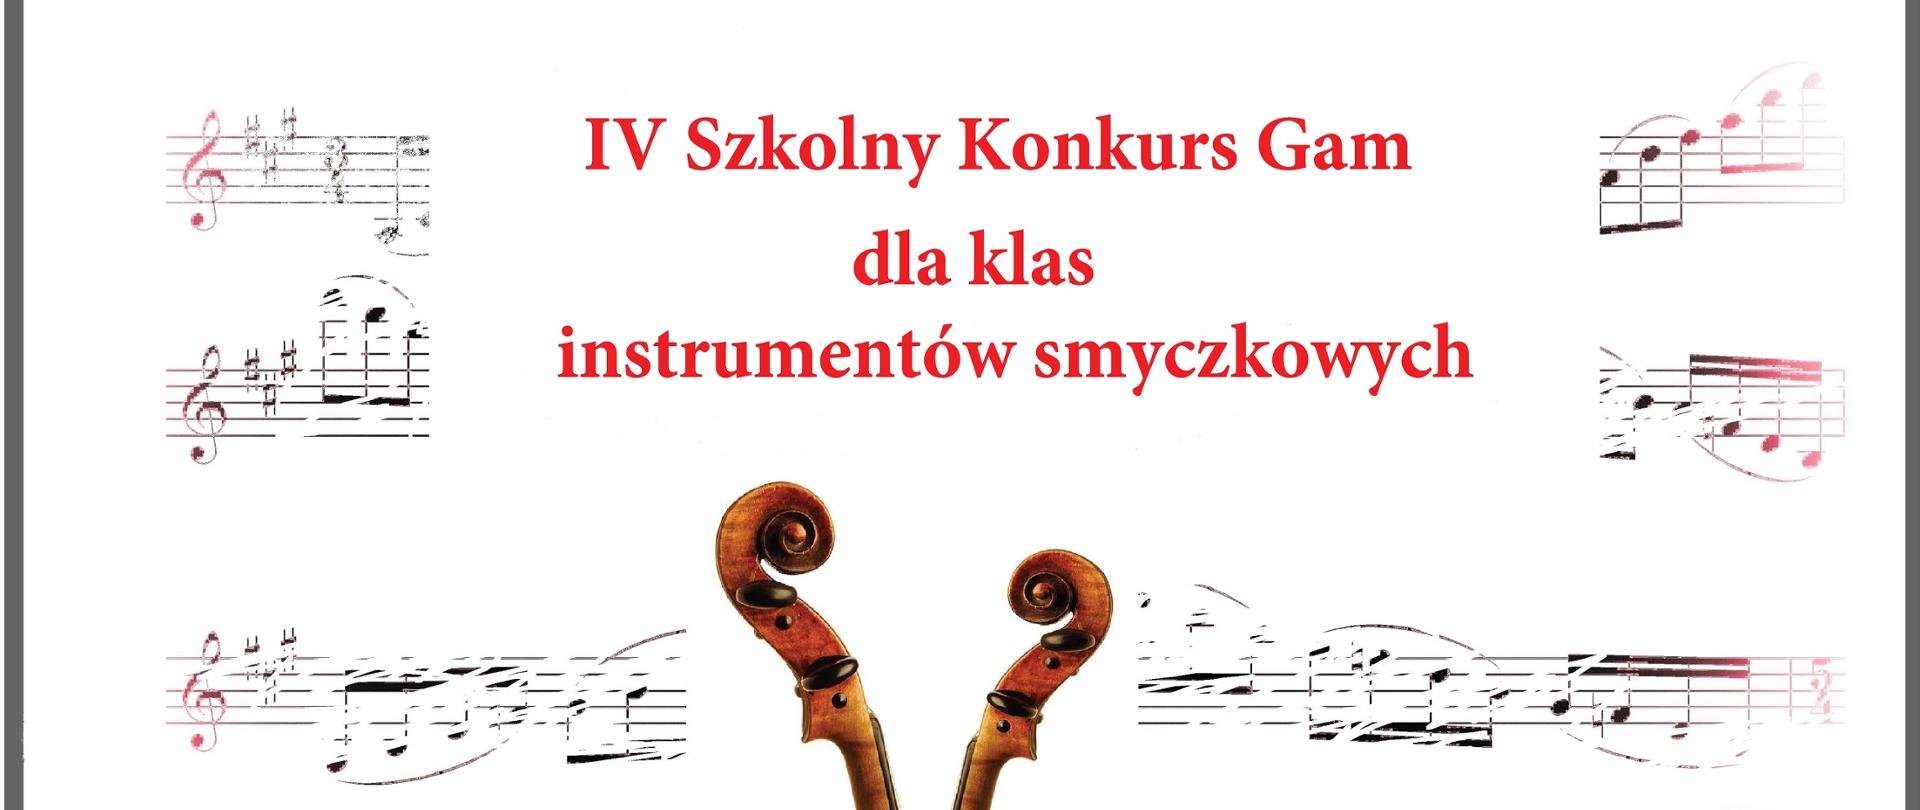 IV Szkolny Konkurs Gam dla klas instrumentów smyczkowych, logo szkoły